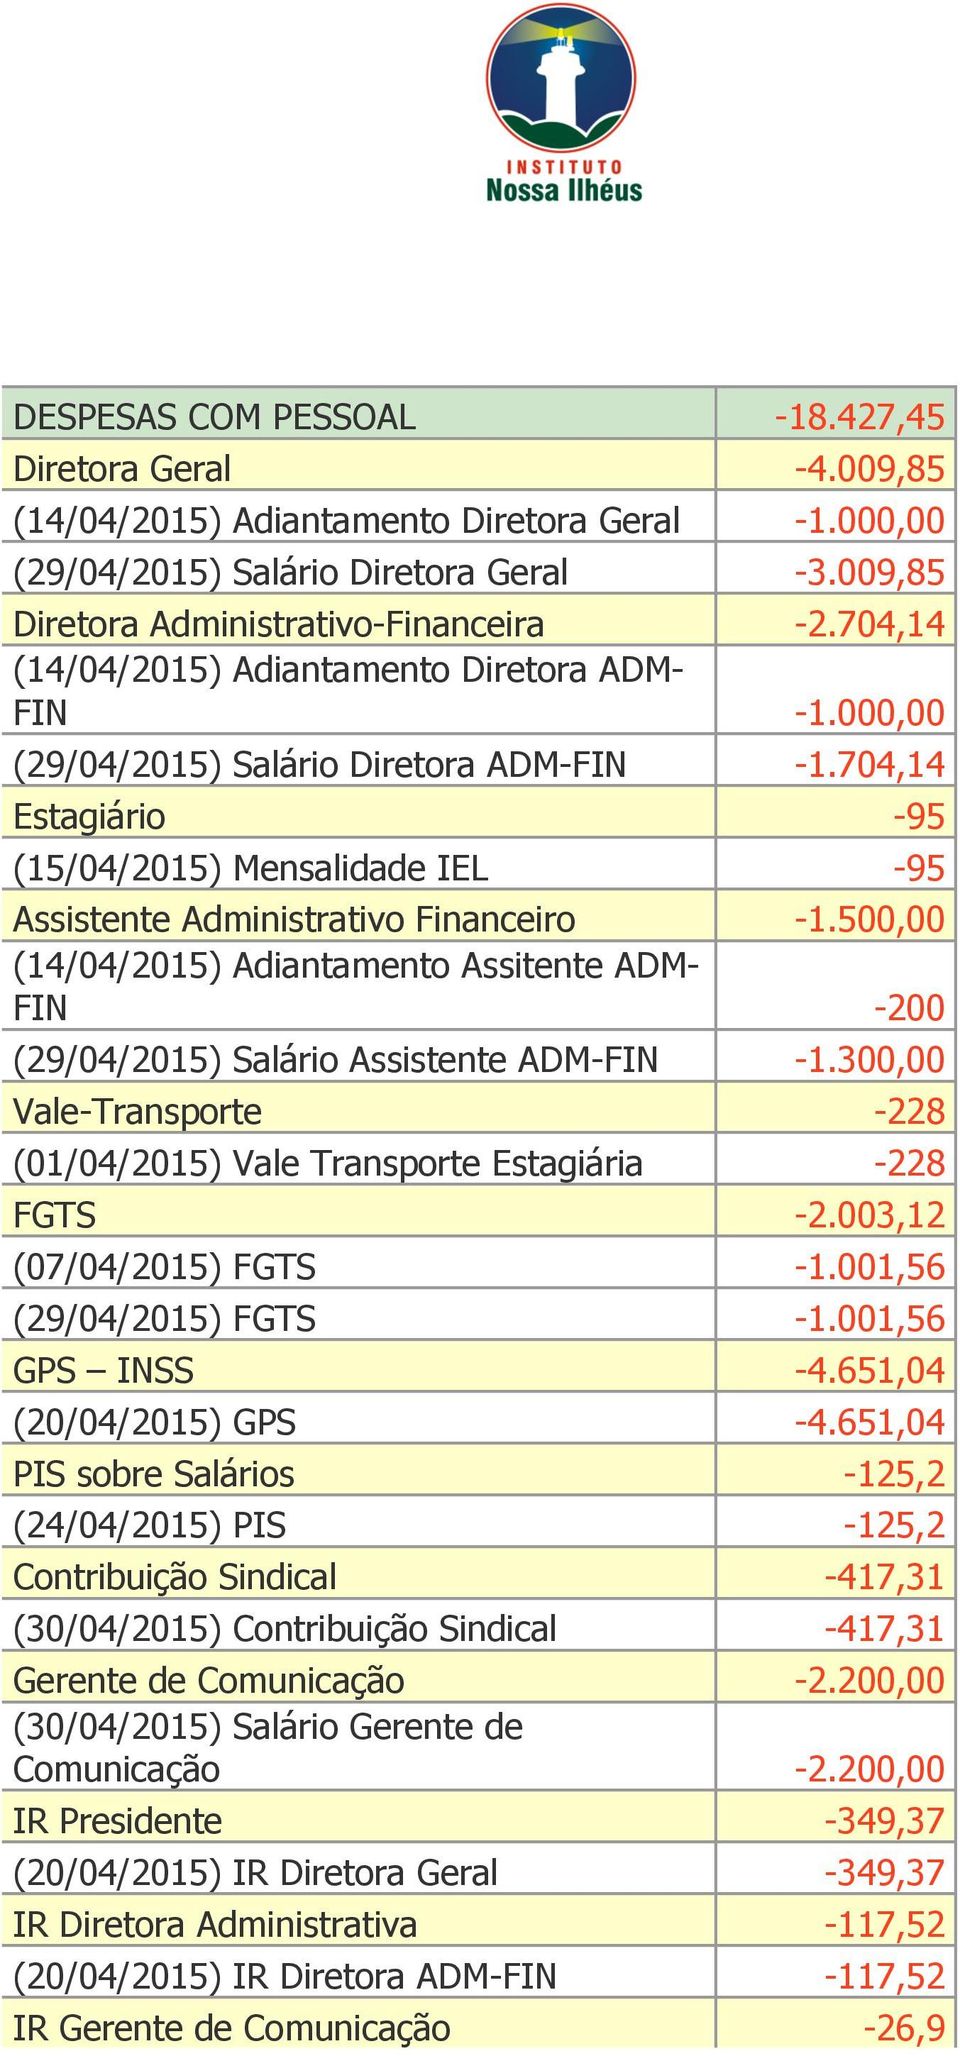 500,00 (14/04/2015) Adiantamento Assitente ADM- FIN -200 (29/04/2015) Salário Assistente ADM-FIN -1.300,00 Vale-Transporte -228 (01/04/2015) Vale Transporte Estagiária -228 FGTS -2.